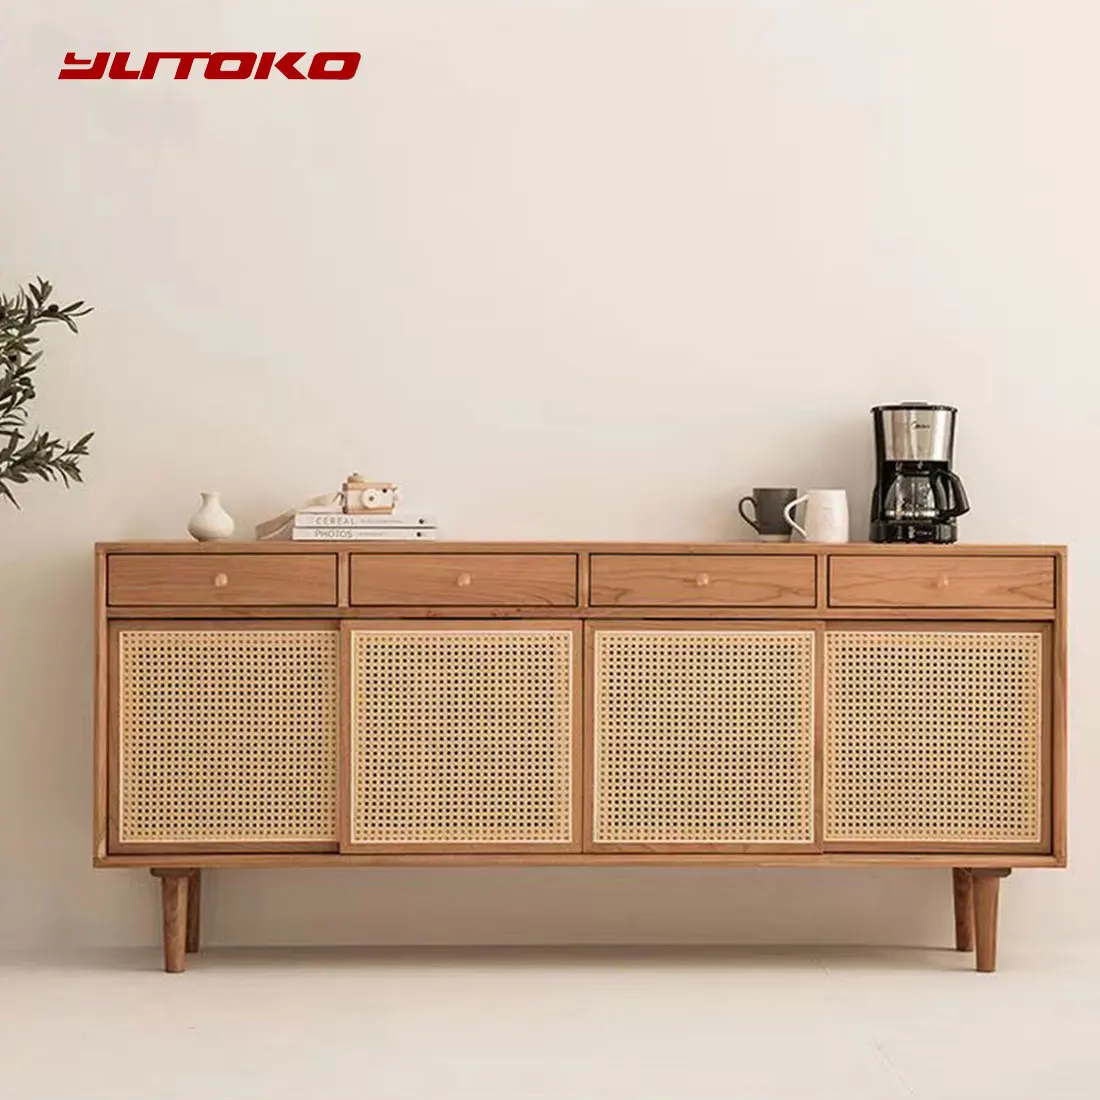 Yutoko-Poignée de meuble nordique en bois massif avec vis, bouton de garde-robe respectueux de l'environnement